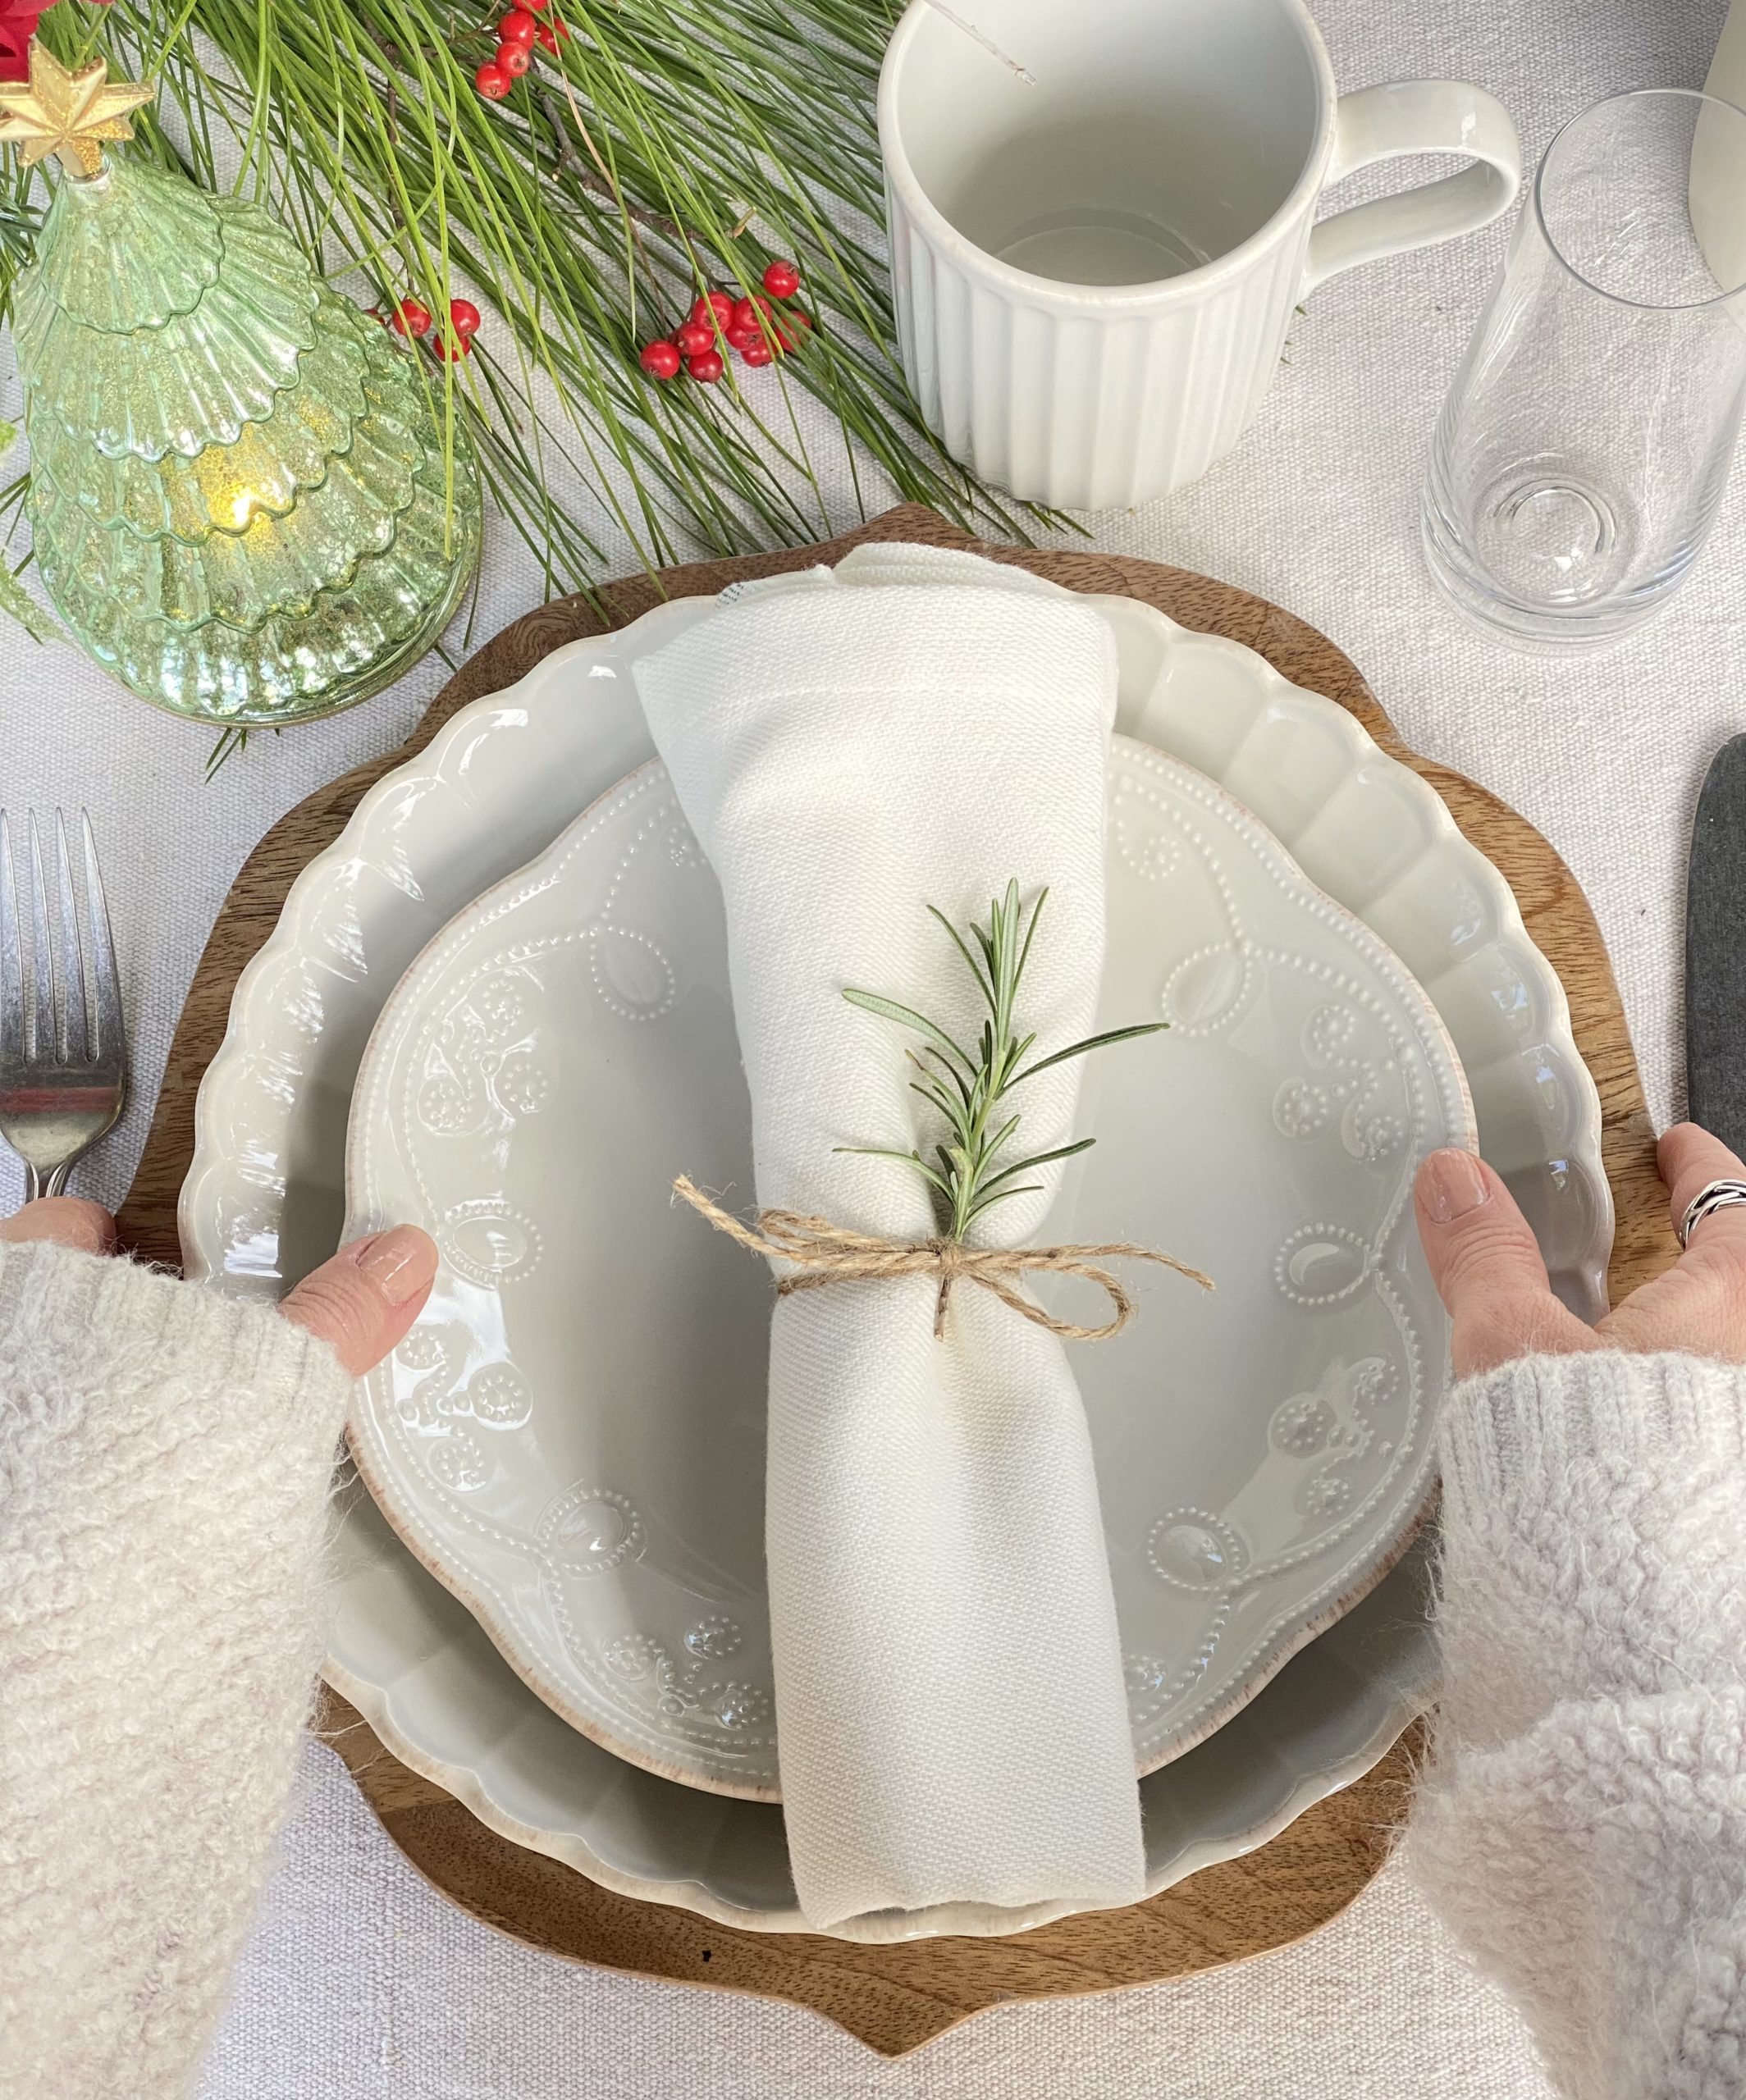 A Lenox place setting with a napkin, mug, glass, and mercury glass Christmas tree.